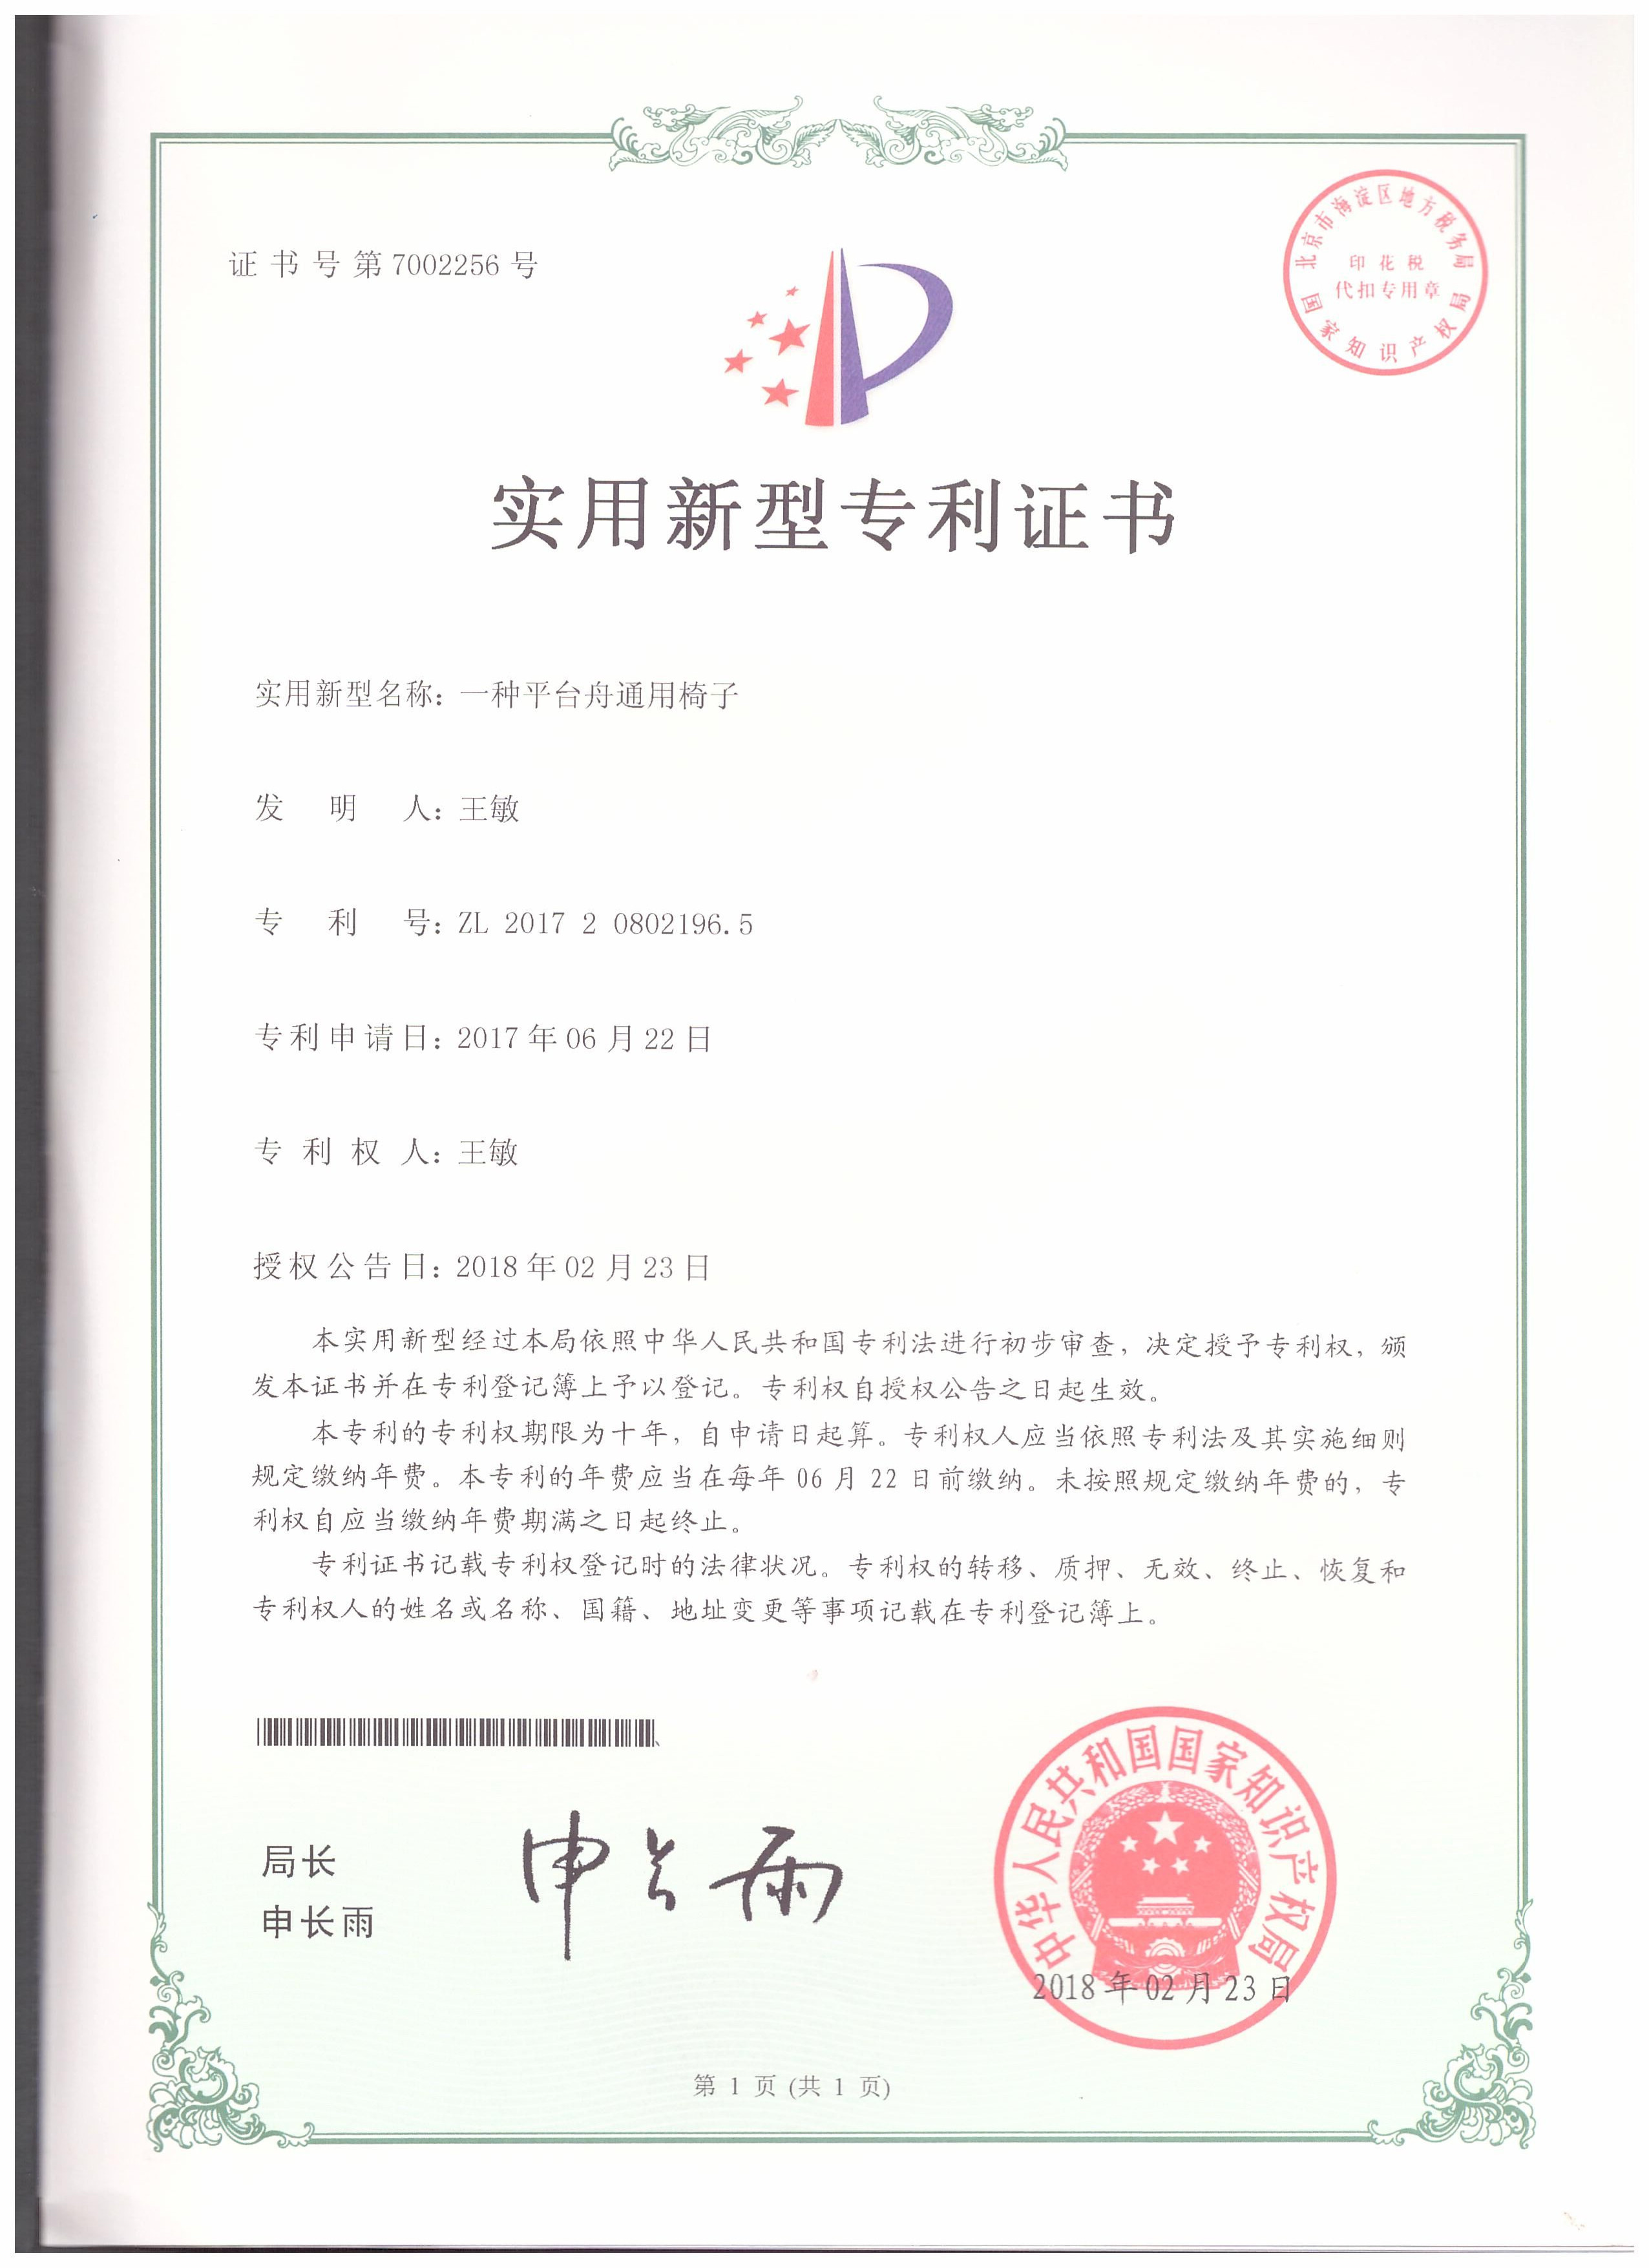 Yuyao Lvhang Yacht Co. Ltd Certifications